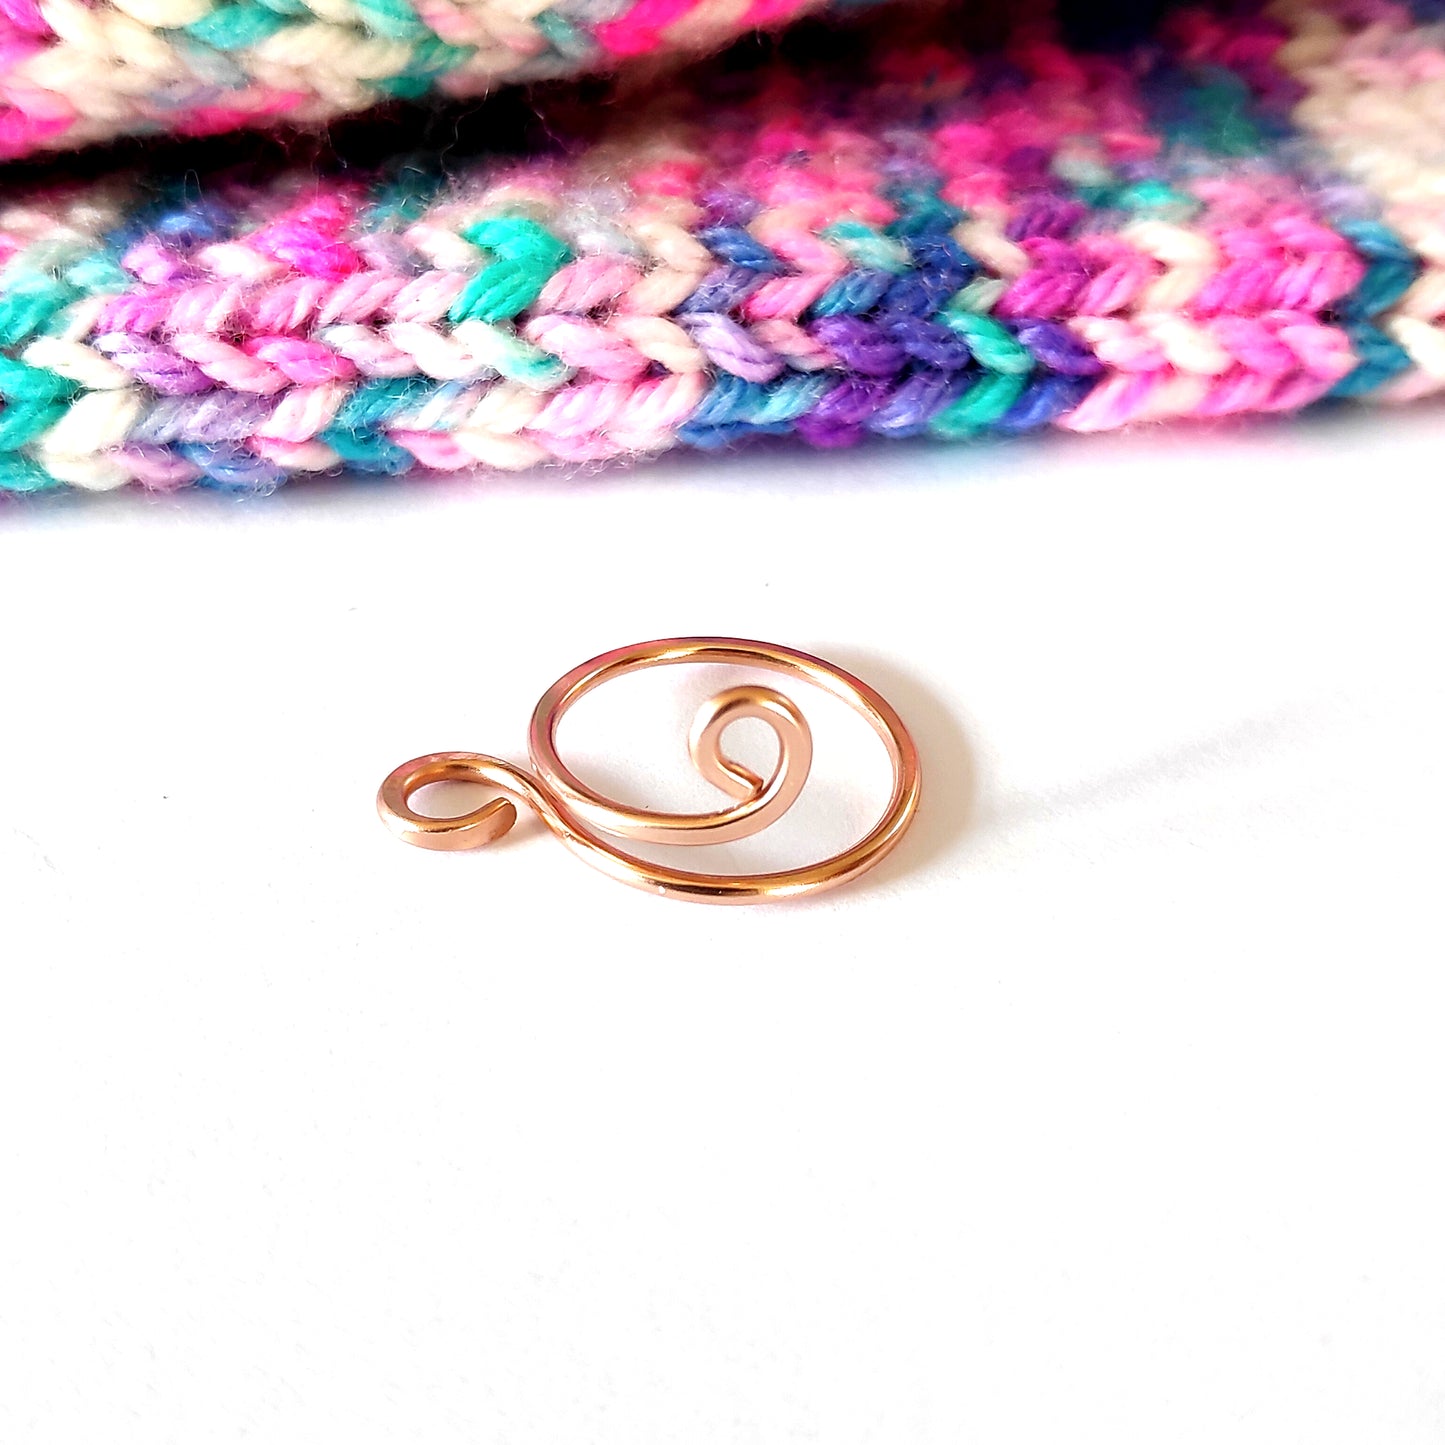 Yarn Ring in Gold - "Swirly"